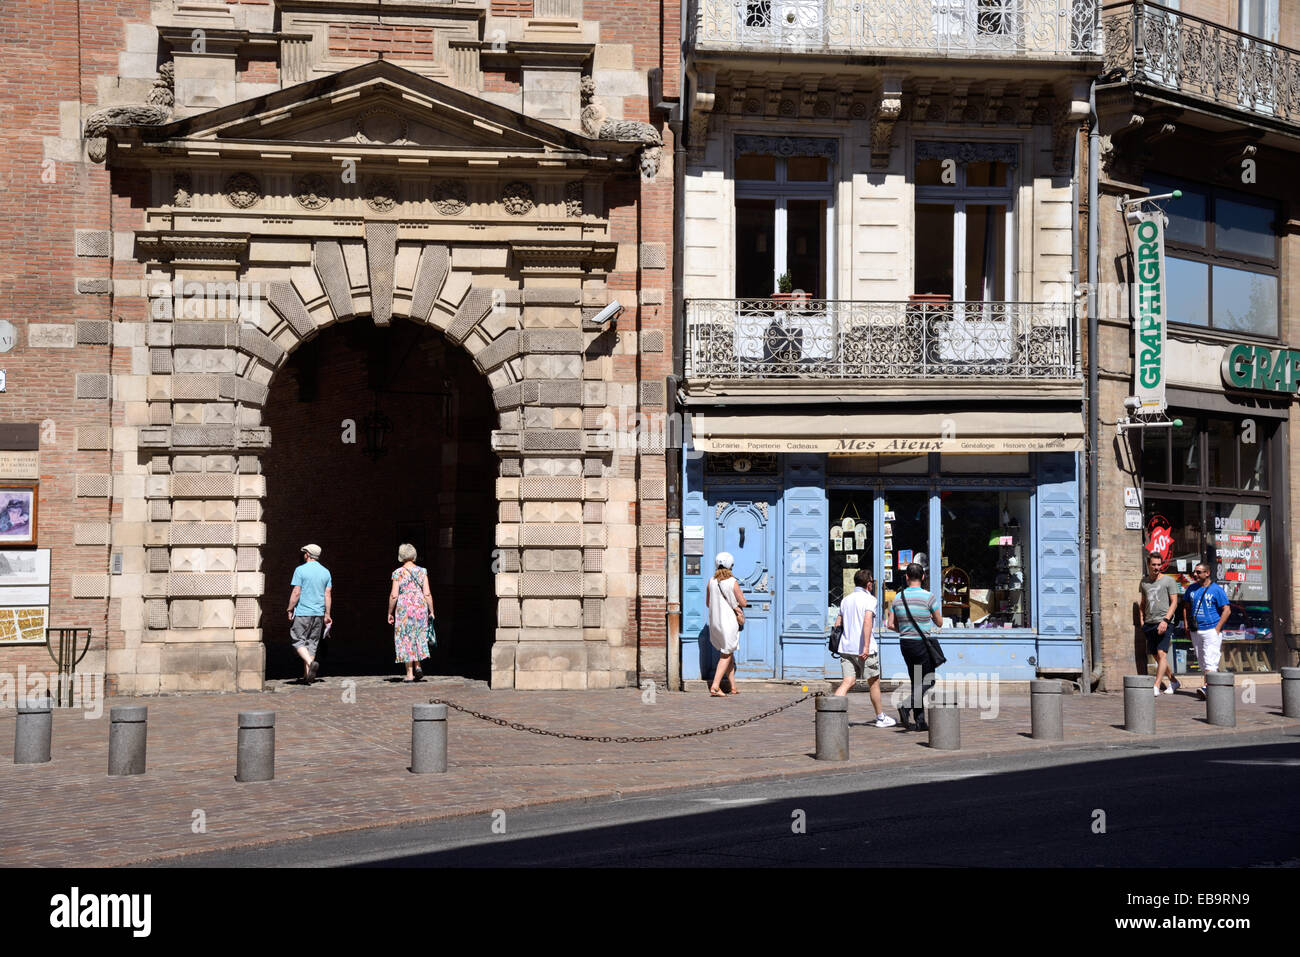 Tourists Walk Past Renaissance Entrance to the Assezat Palace or Hôtel d'Assezat, c16th, on Rue de Metz Equirol Toulouse  France Stock Photo